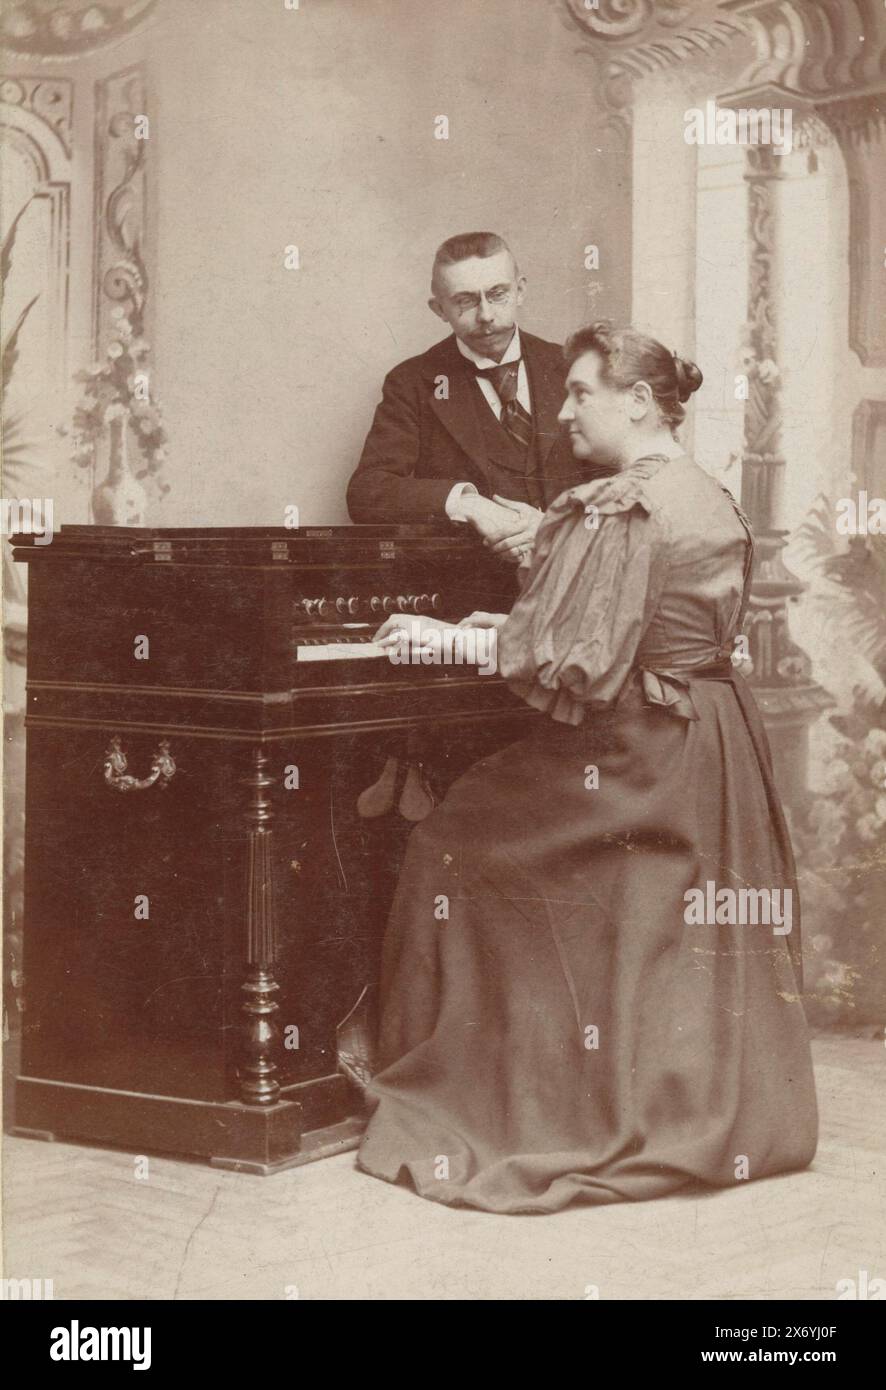 Ritratto di una donna che suona l'organo e di un uomo che guarda, fotografia di un armadietto, Léonard Hubert Zeyen, (menzionato sull'oggetto), Luik, c. 1890 - in o prima del 1915, cartone, altezza, 137 mm x larghezza, 92 mm Foto Stock